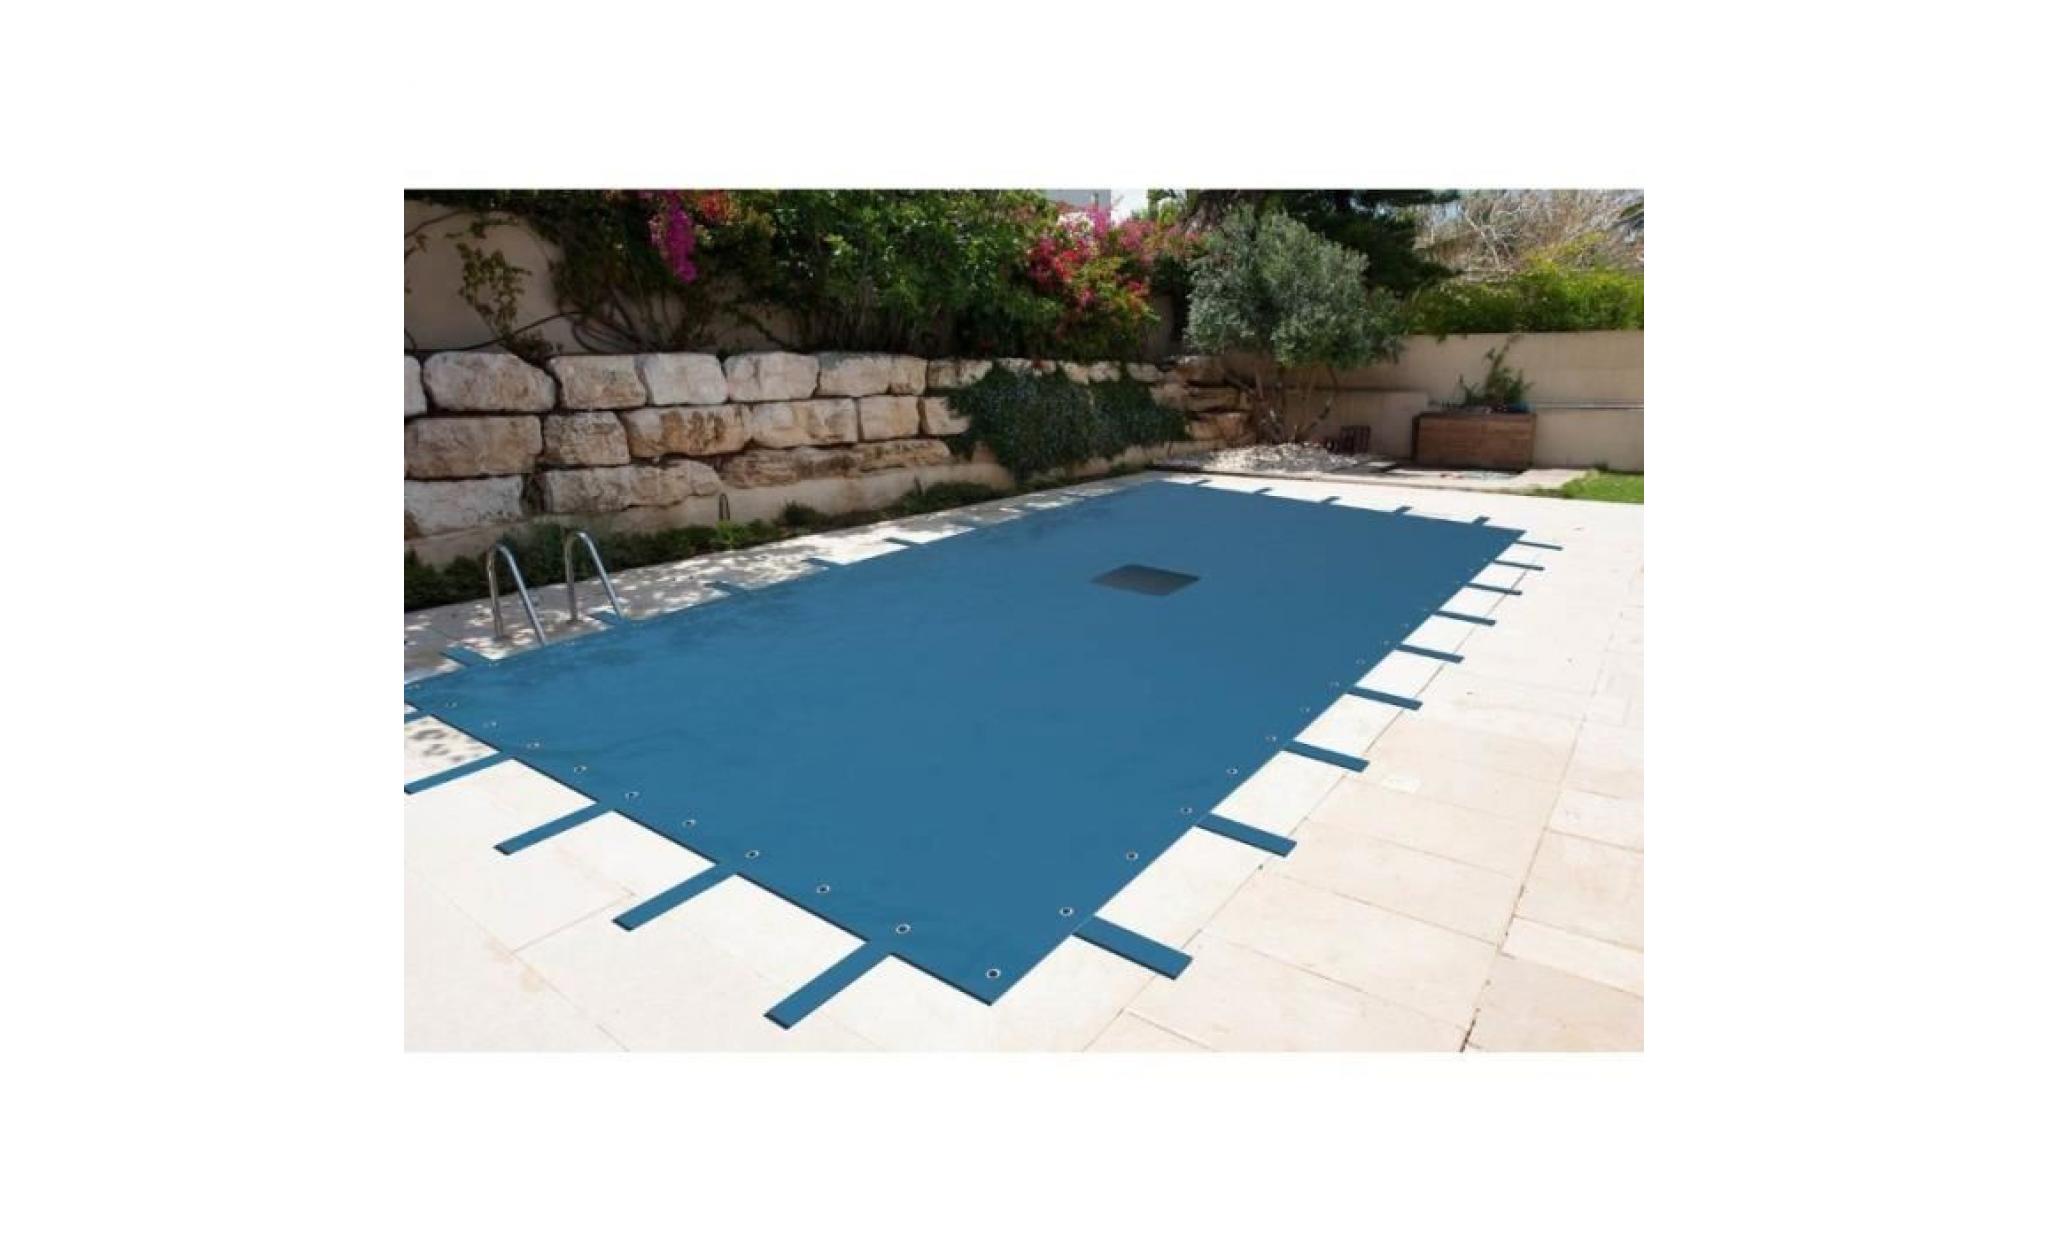 bâche piscine rectangulaire 6 x 10 m avec filet d'écoulement centrale   couverture piscine   bache imperméable   baches piscine